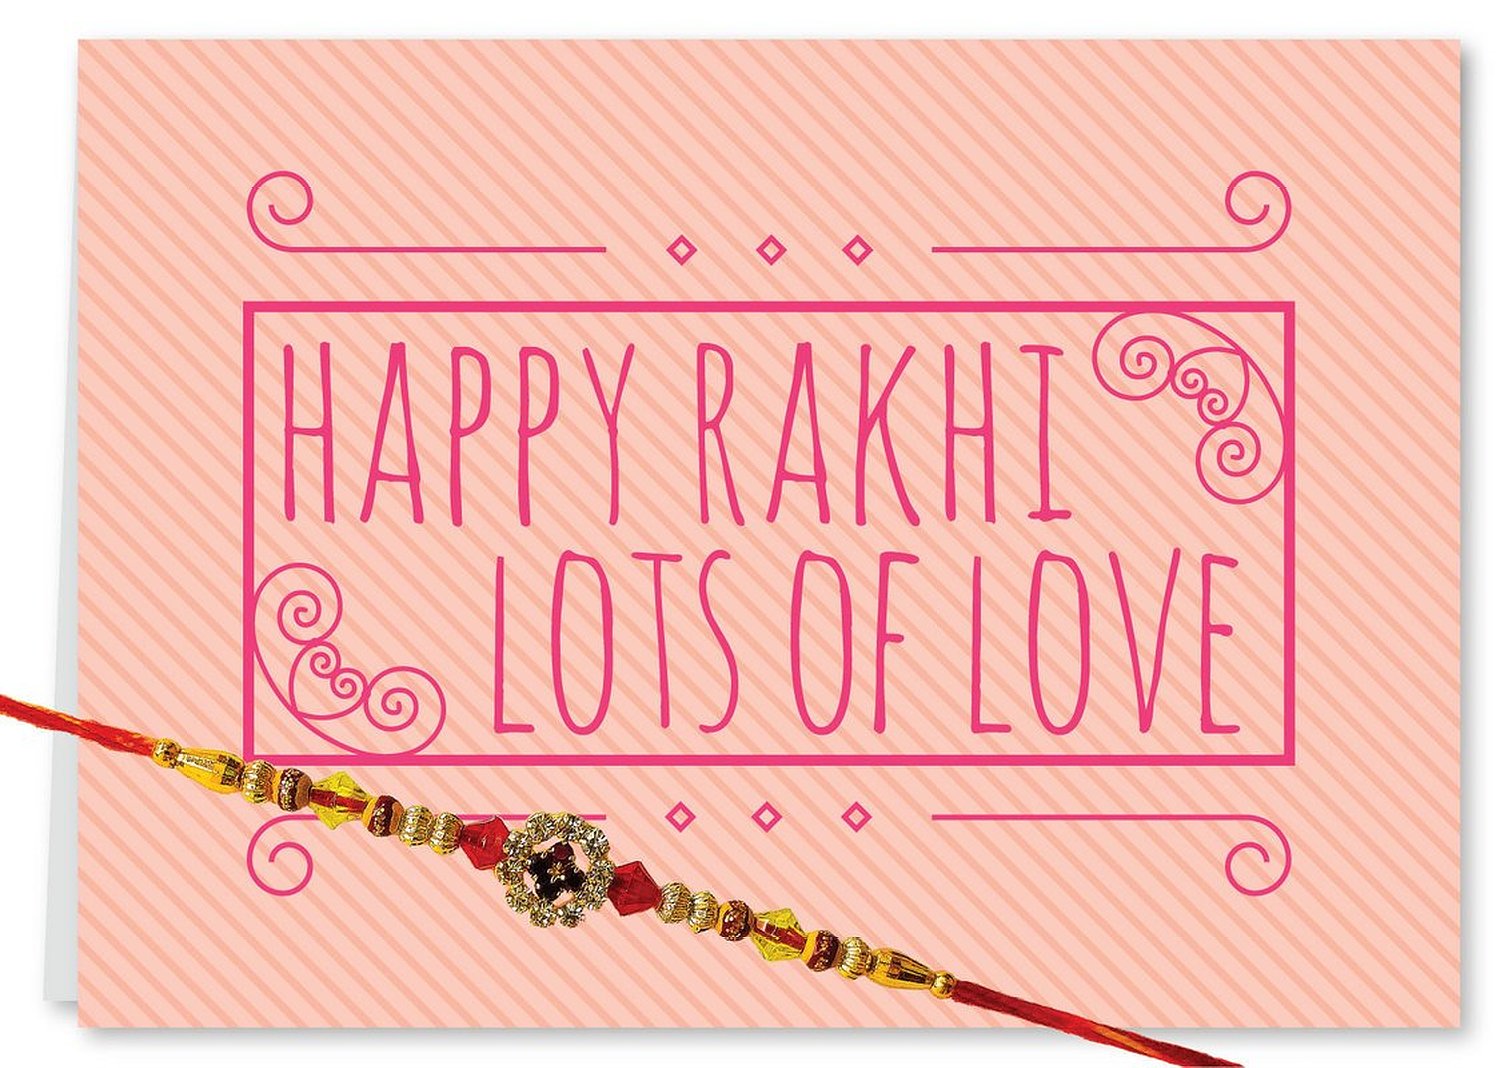 Greeting cards for rakhi